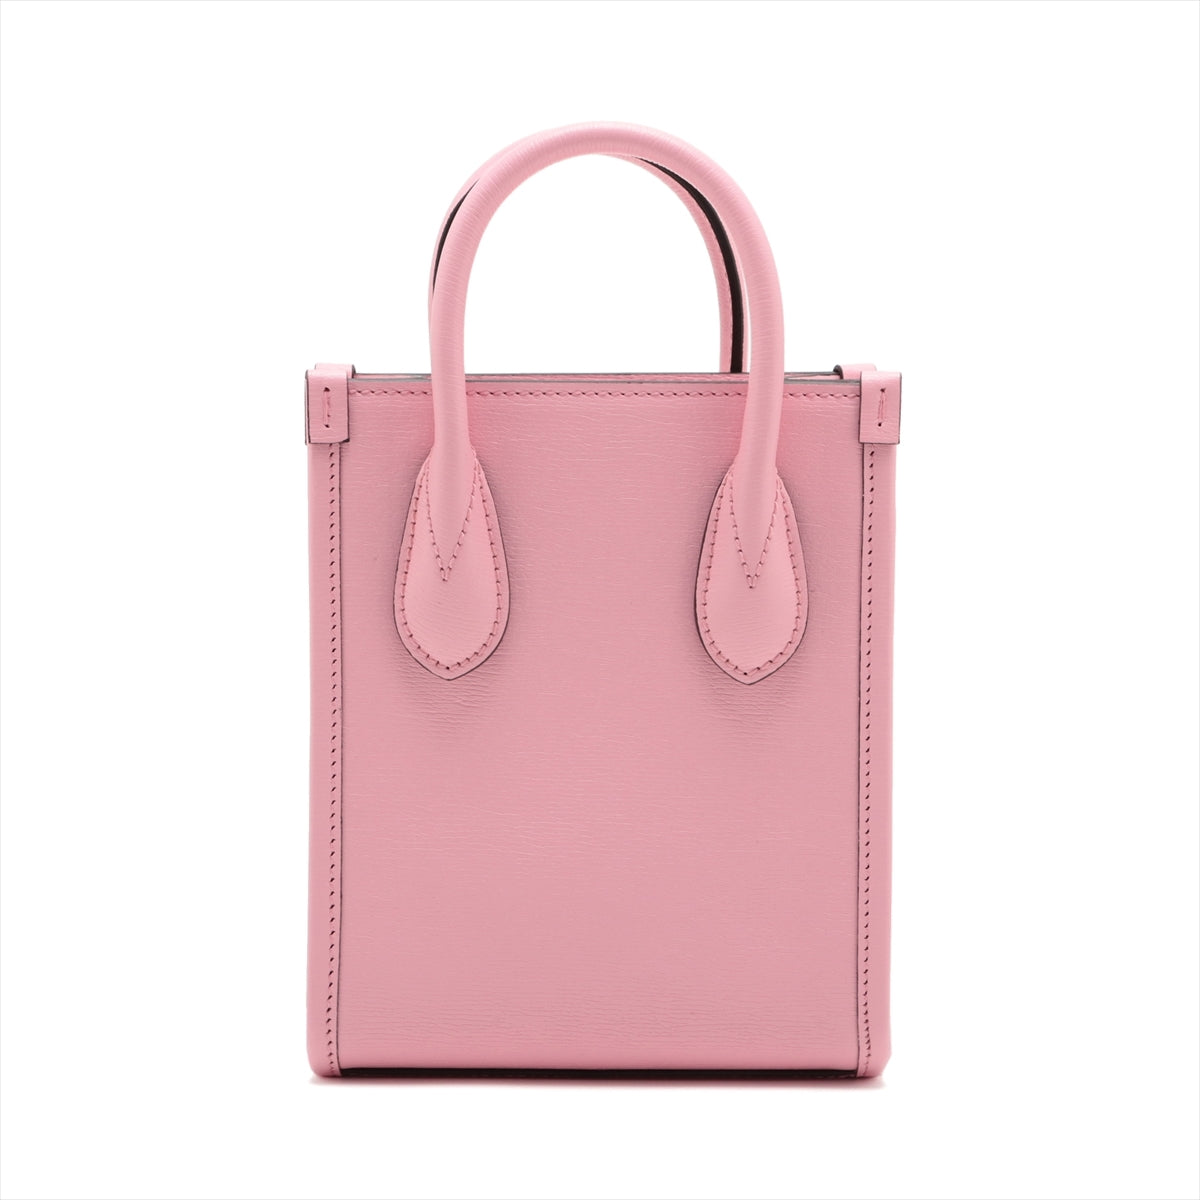 Gucci Leather 2 Way Handbag Pink 671623 Bananya collaboration